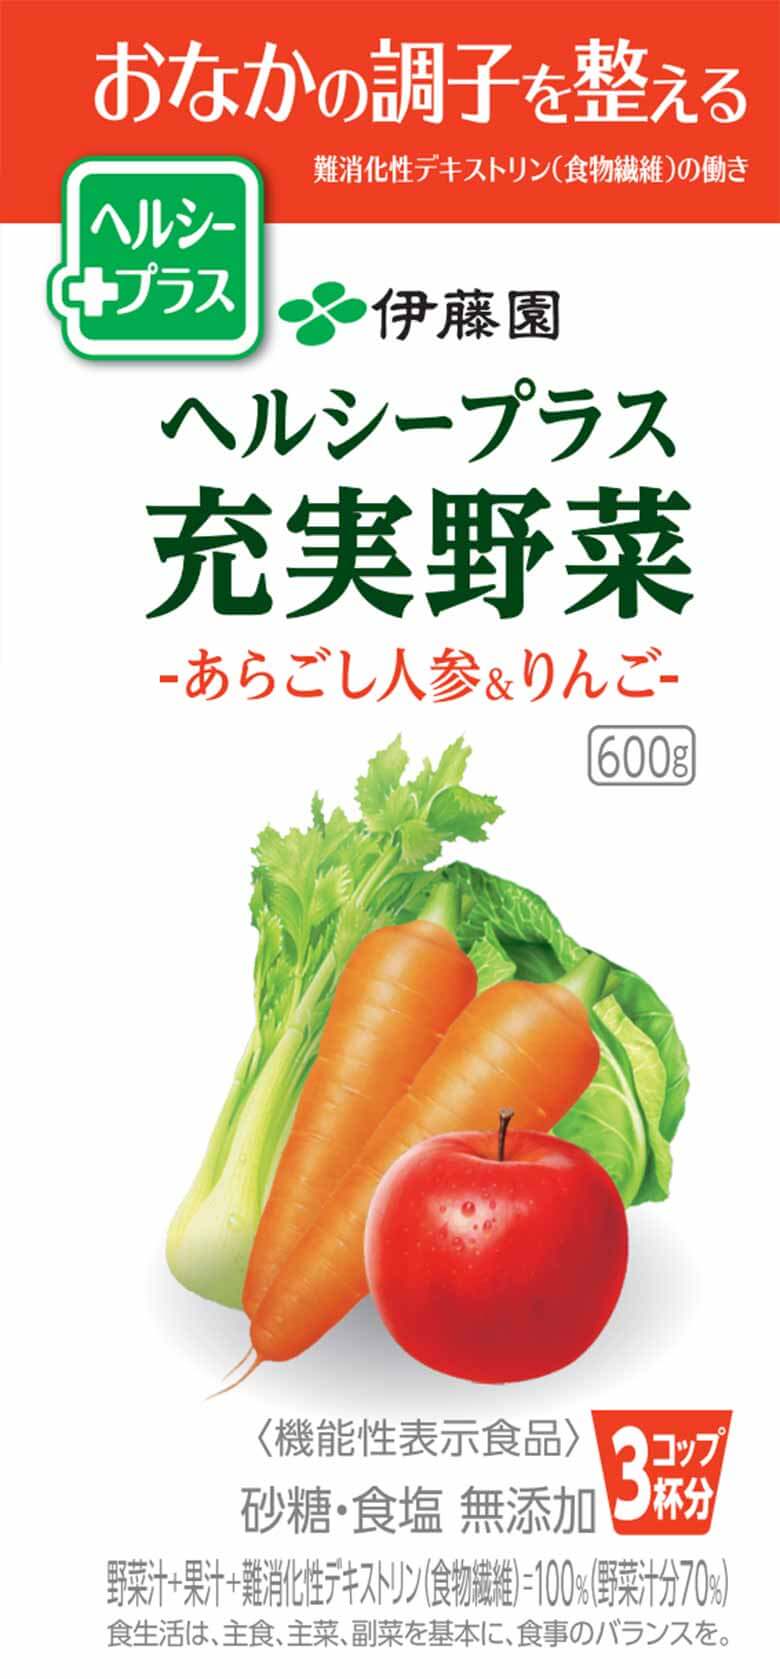 ヘルシープラス充実野菜-あらごし人参&リンゴ-600g